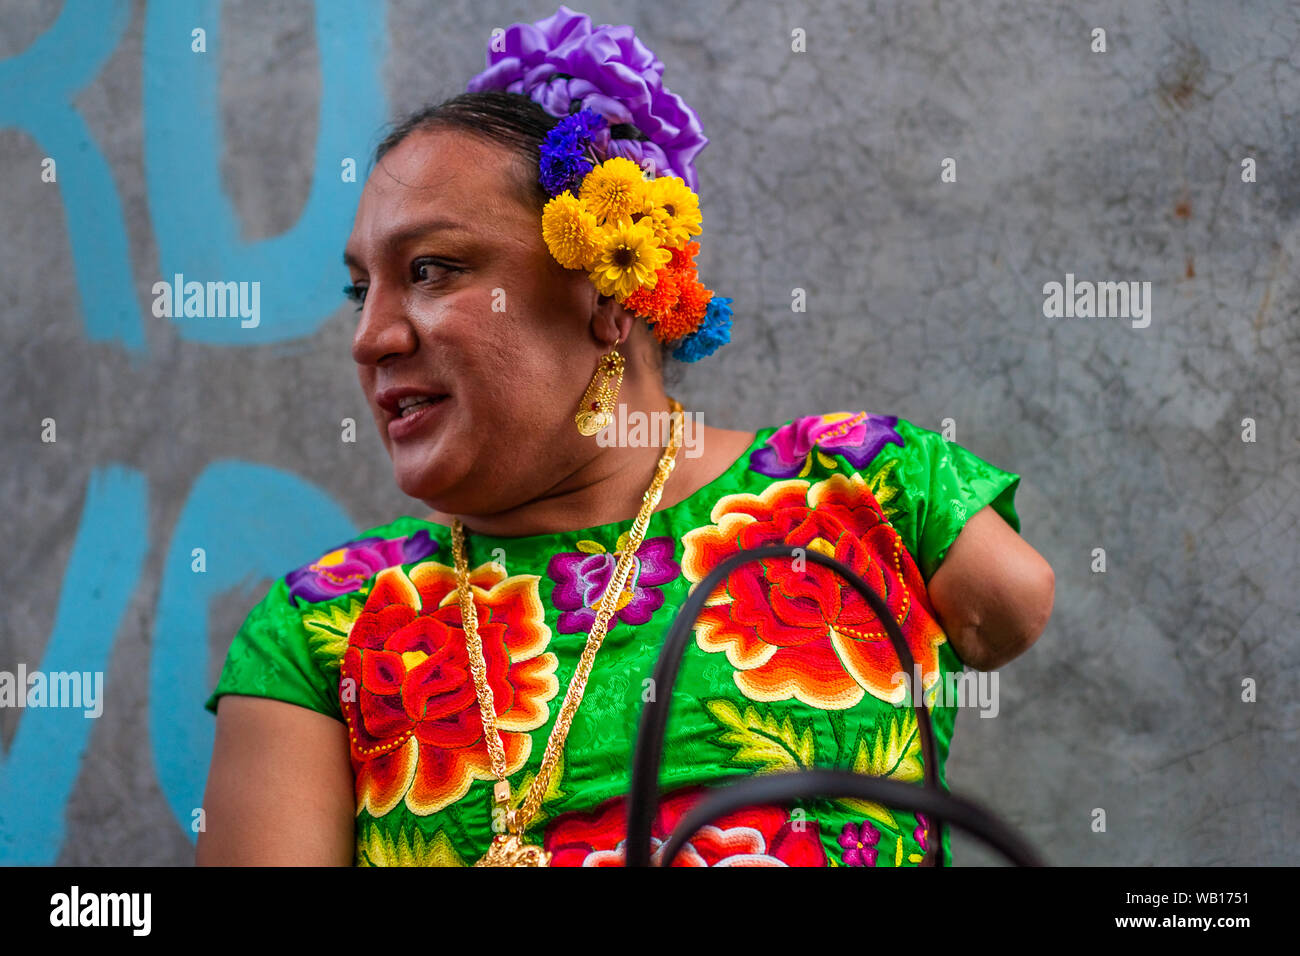 Un Mexicain "muxe" (typiquement, un homosexuel homme portant les vêtements féminins) prend part au festival de Juchitán de Zaragoza, Mexique. Banque D'Images